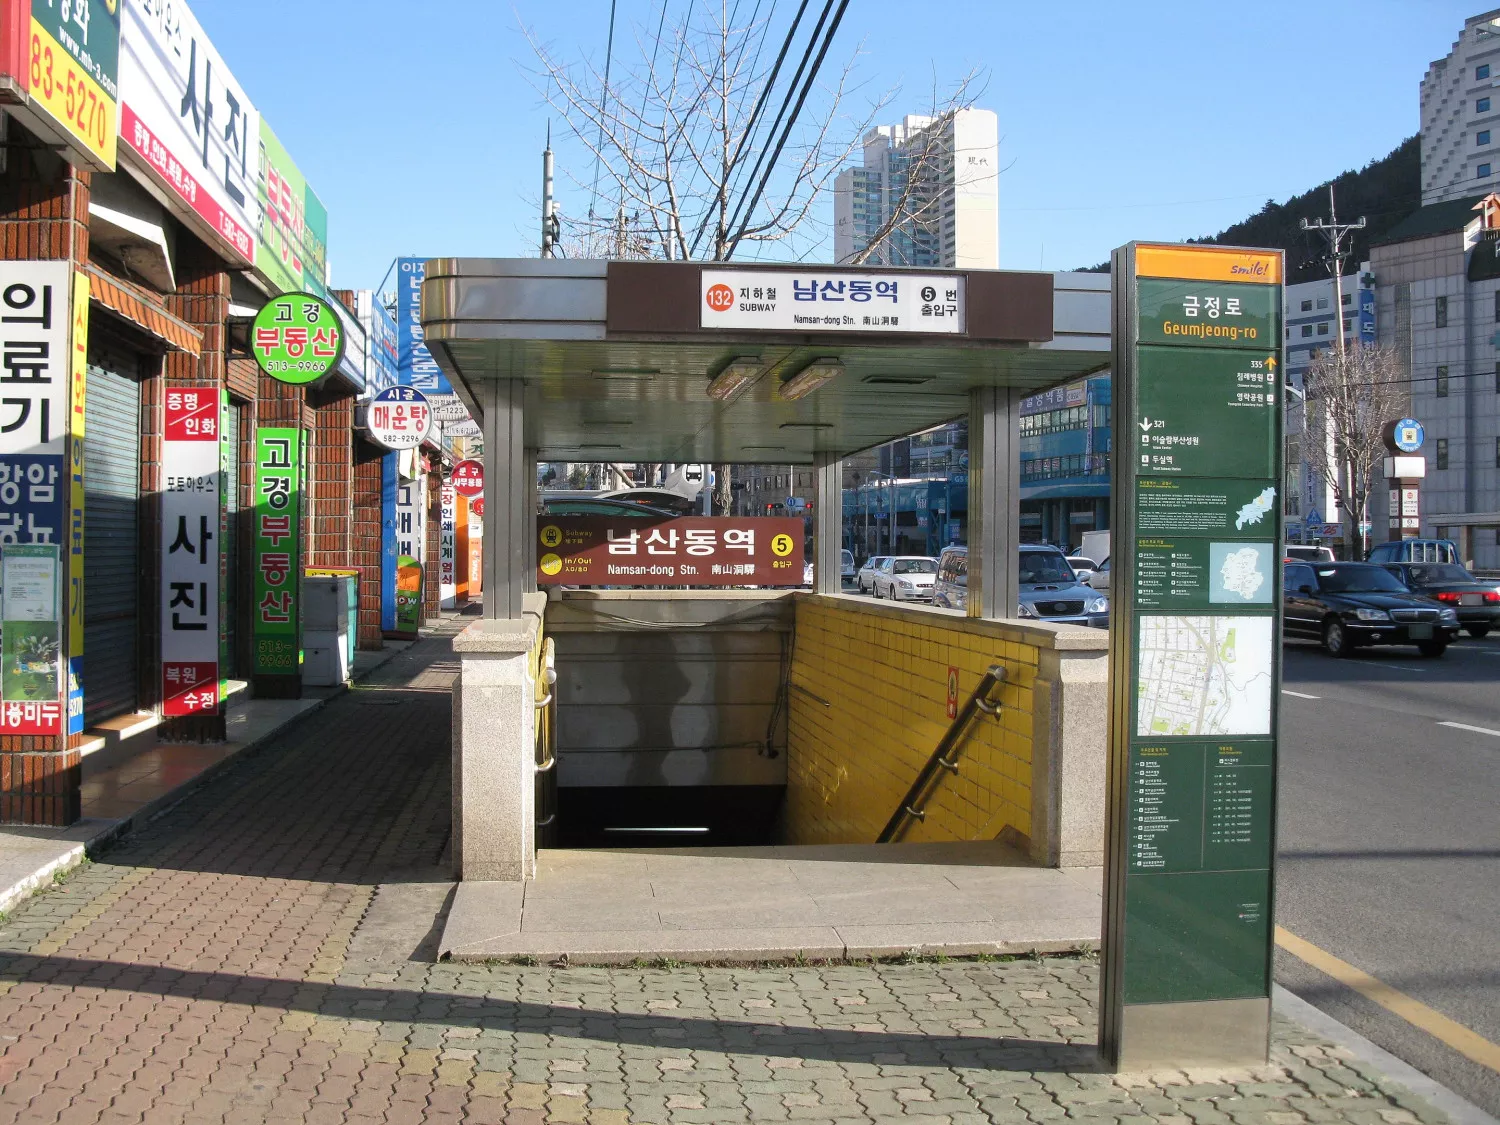 Namsan Station - 남산역 - Busan - South Korea